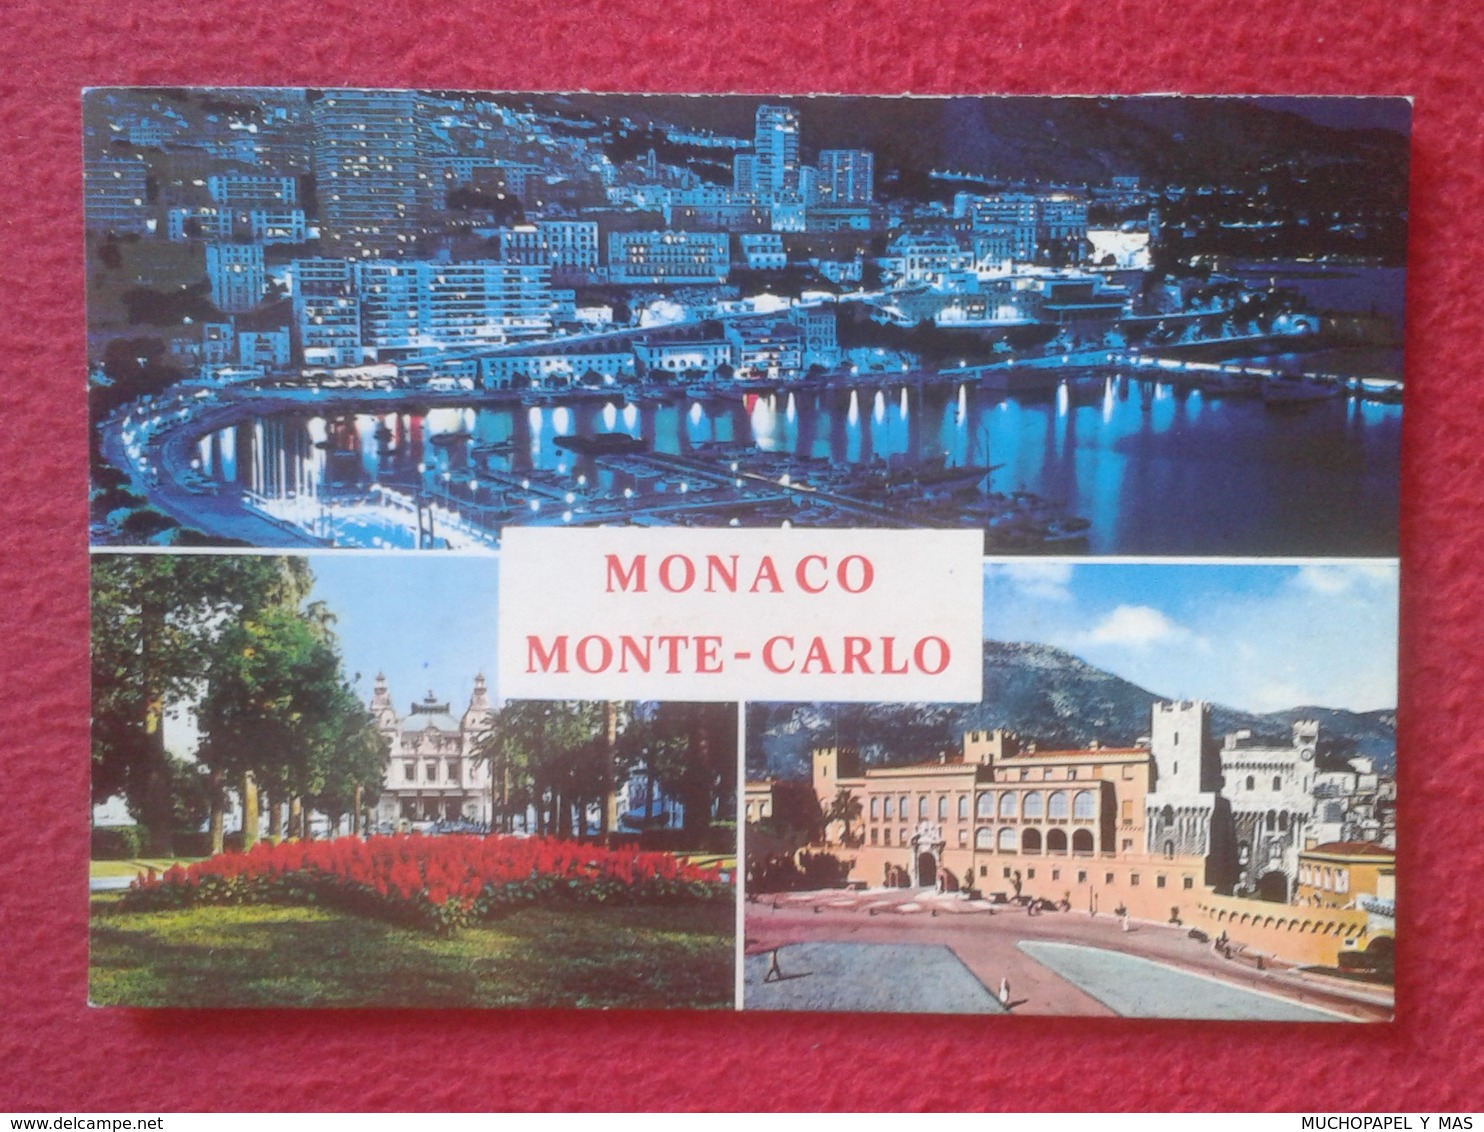 POSTAL POST CARD CARTE POSTALE MONACO MONTE-CARLO COSTA AZUL CÔTE D'AZUR CASINO, PALACE, PALACIO, PORT, PUERTO, HAFEN... - Monte-Carlo